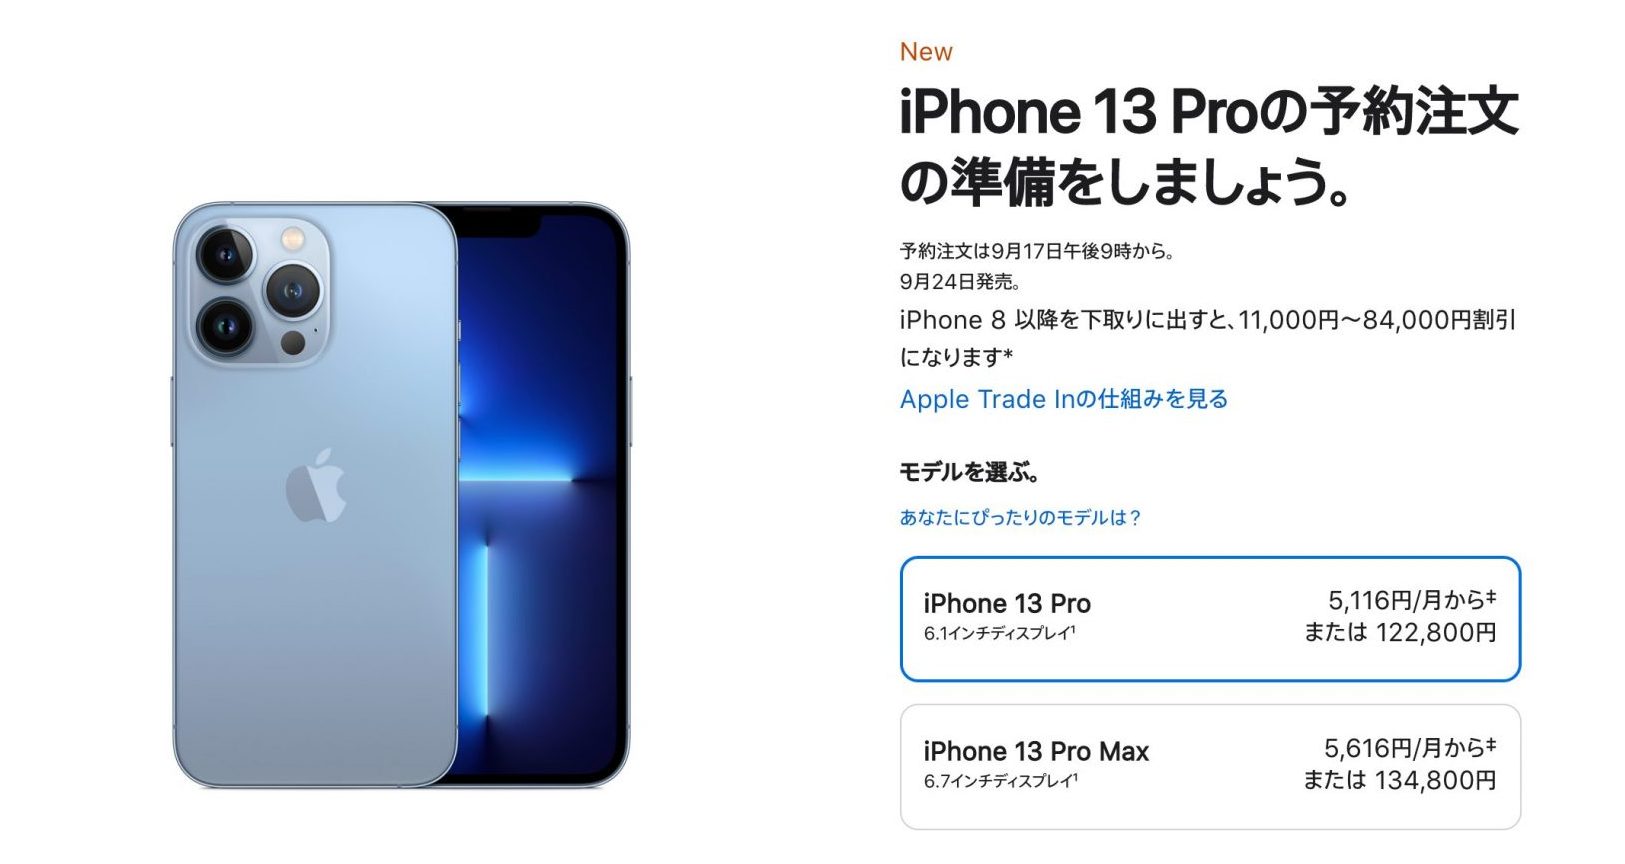 iPhone13 Proの価格画面